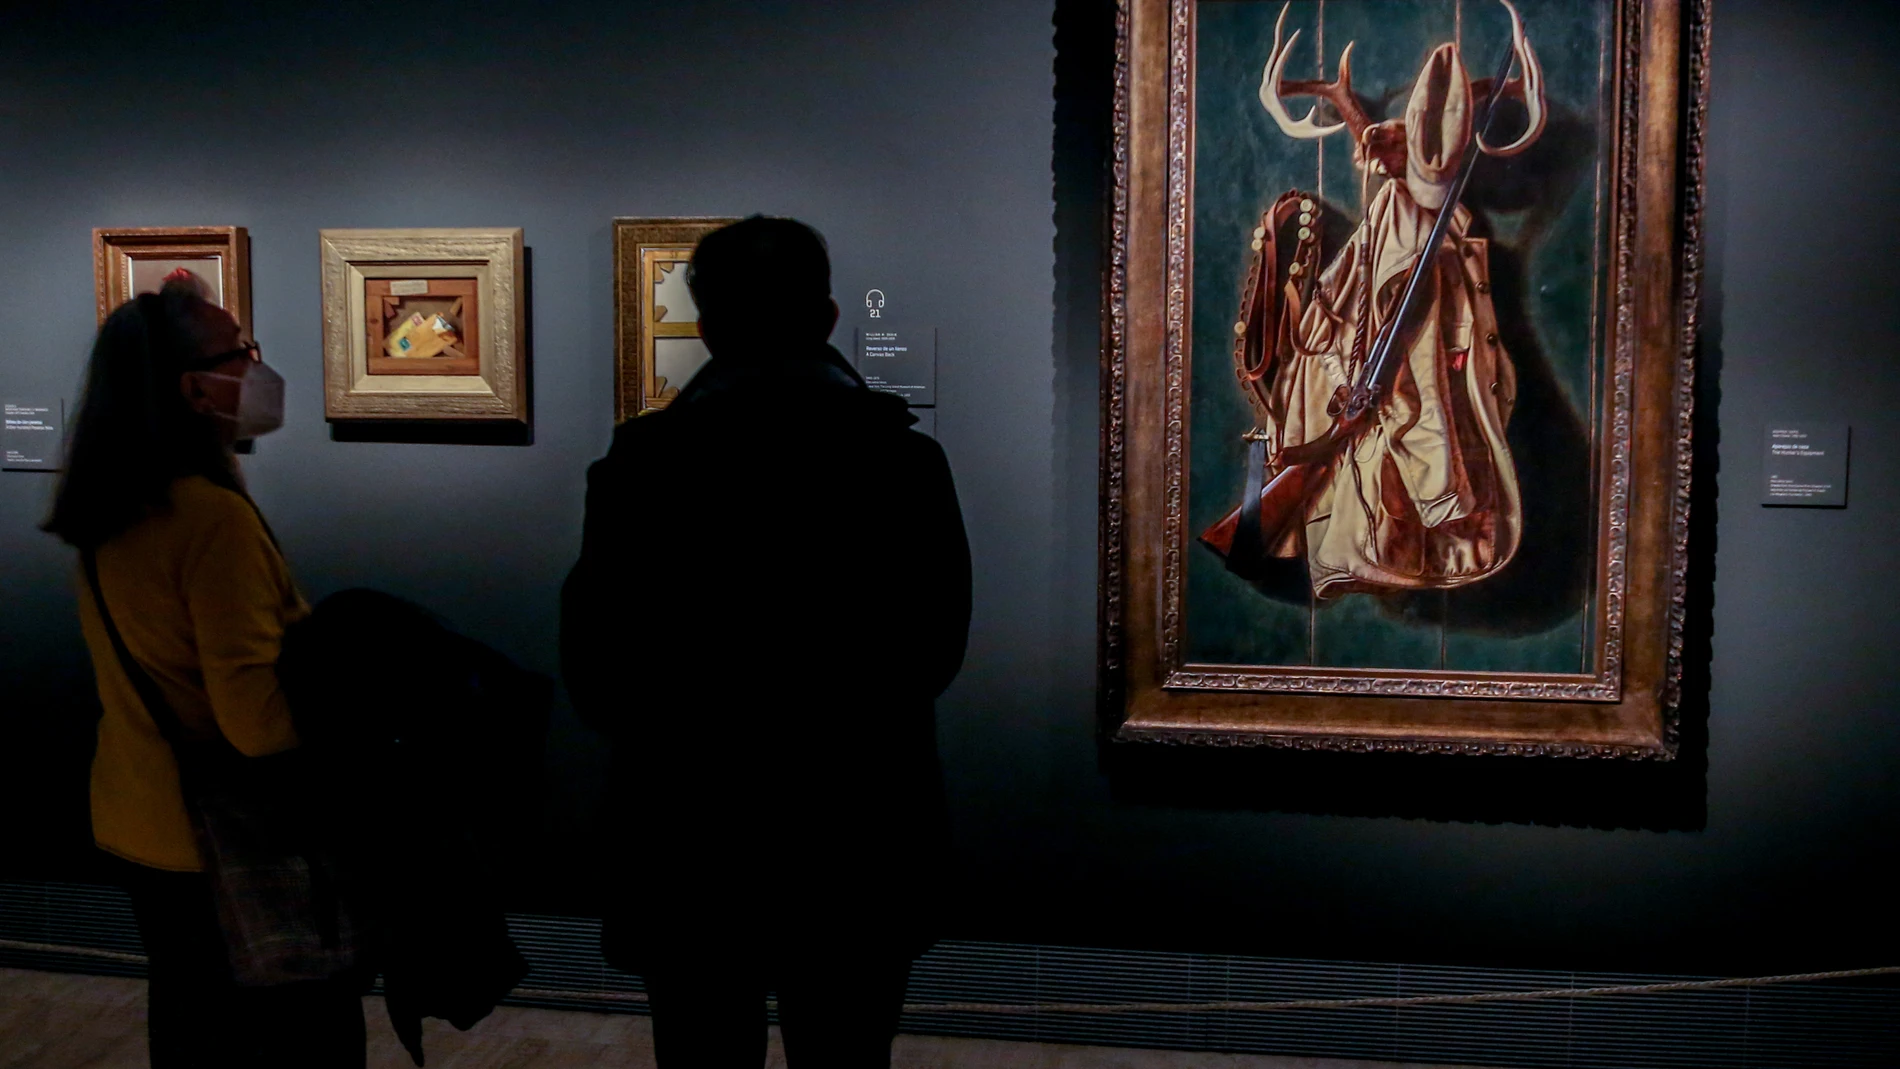 Visitantes contemplan la obras que forman parte de la exposición “Hiperreal. El arte del trampantojo”, en la sala de exposiciones temporales del Museo Nacional Thyssen-Bornemisza